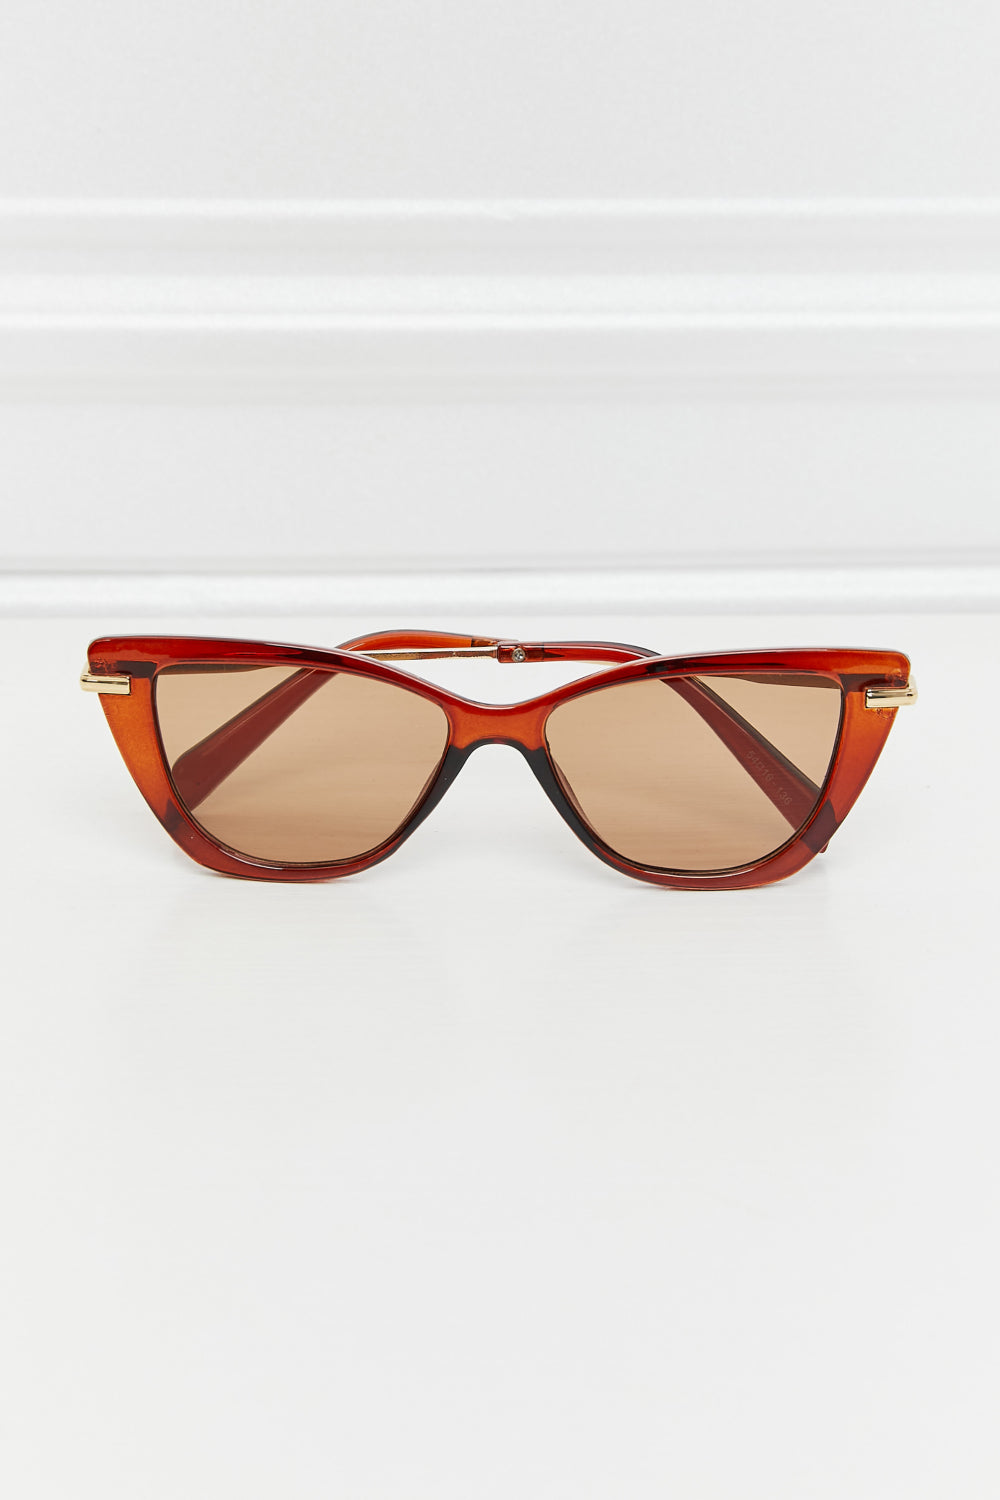 Full Rim Sunglasses Burnt Umber One Size Sunglasses by Vim&Vigor | Vim&Vigor Boutique